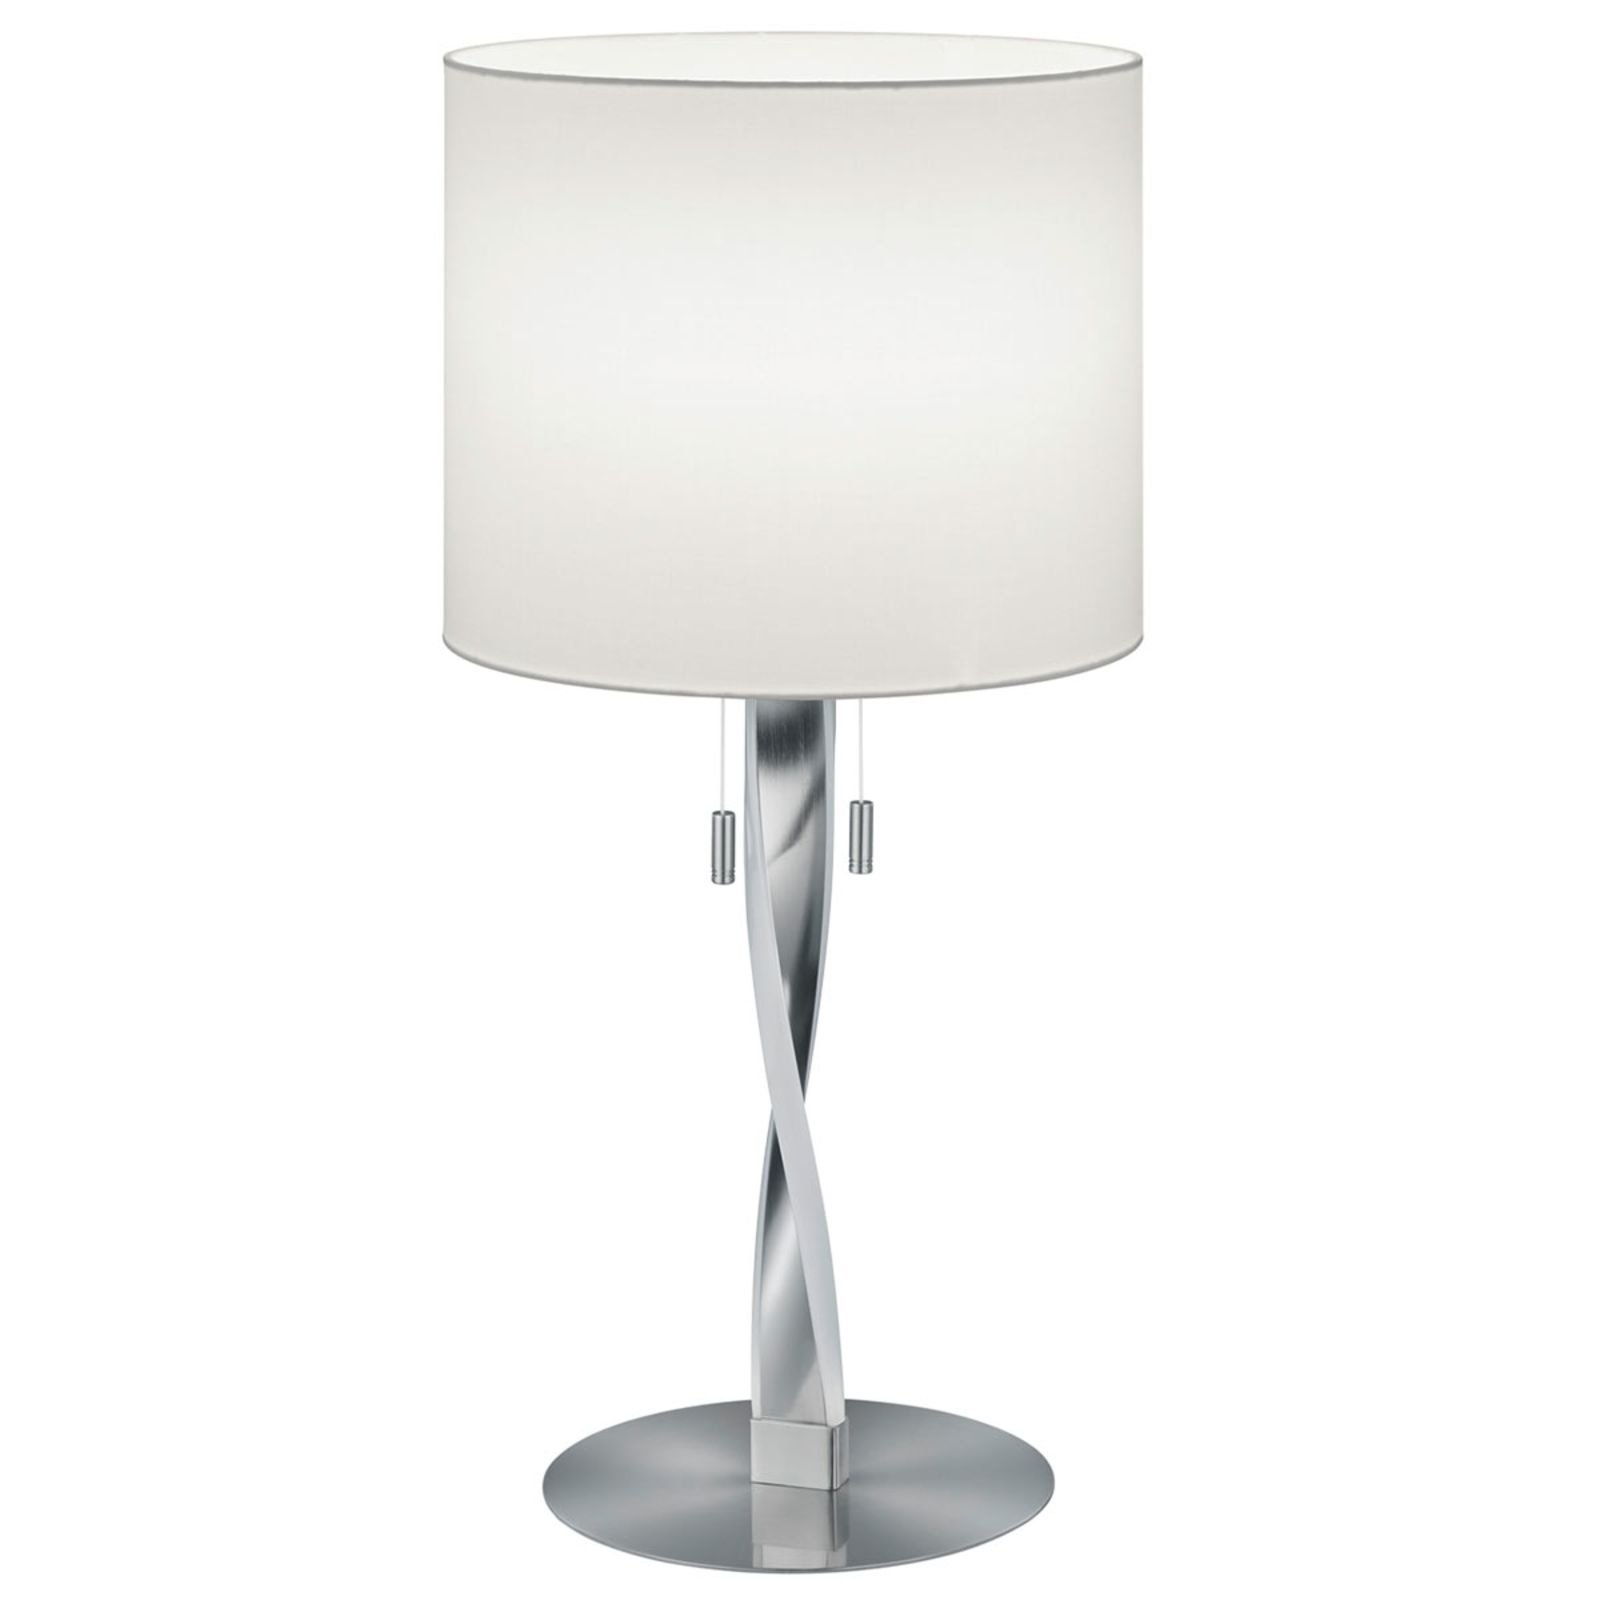 Moderní stolní lampa Nandor s přídavnými LED